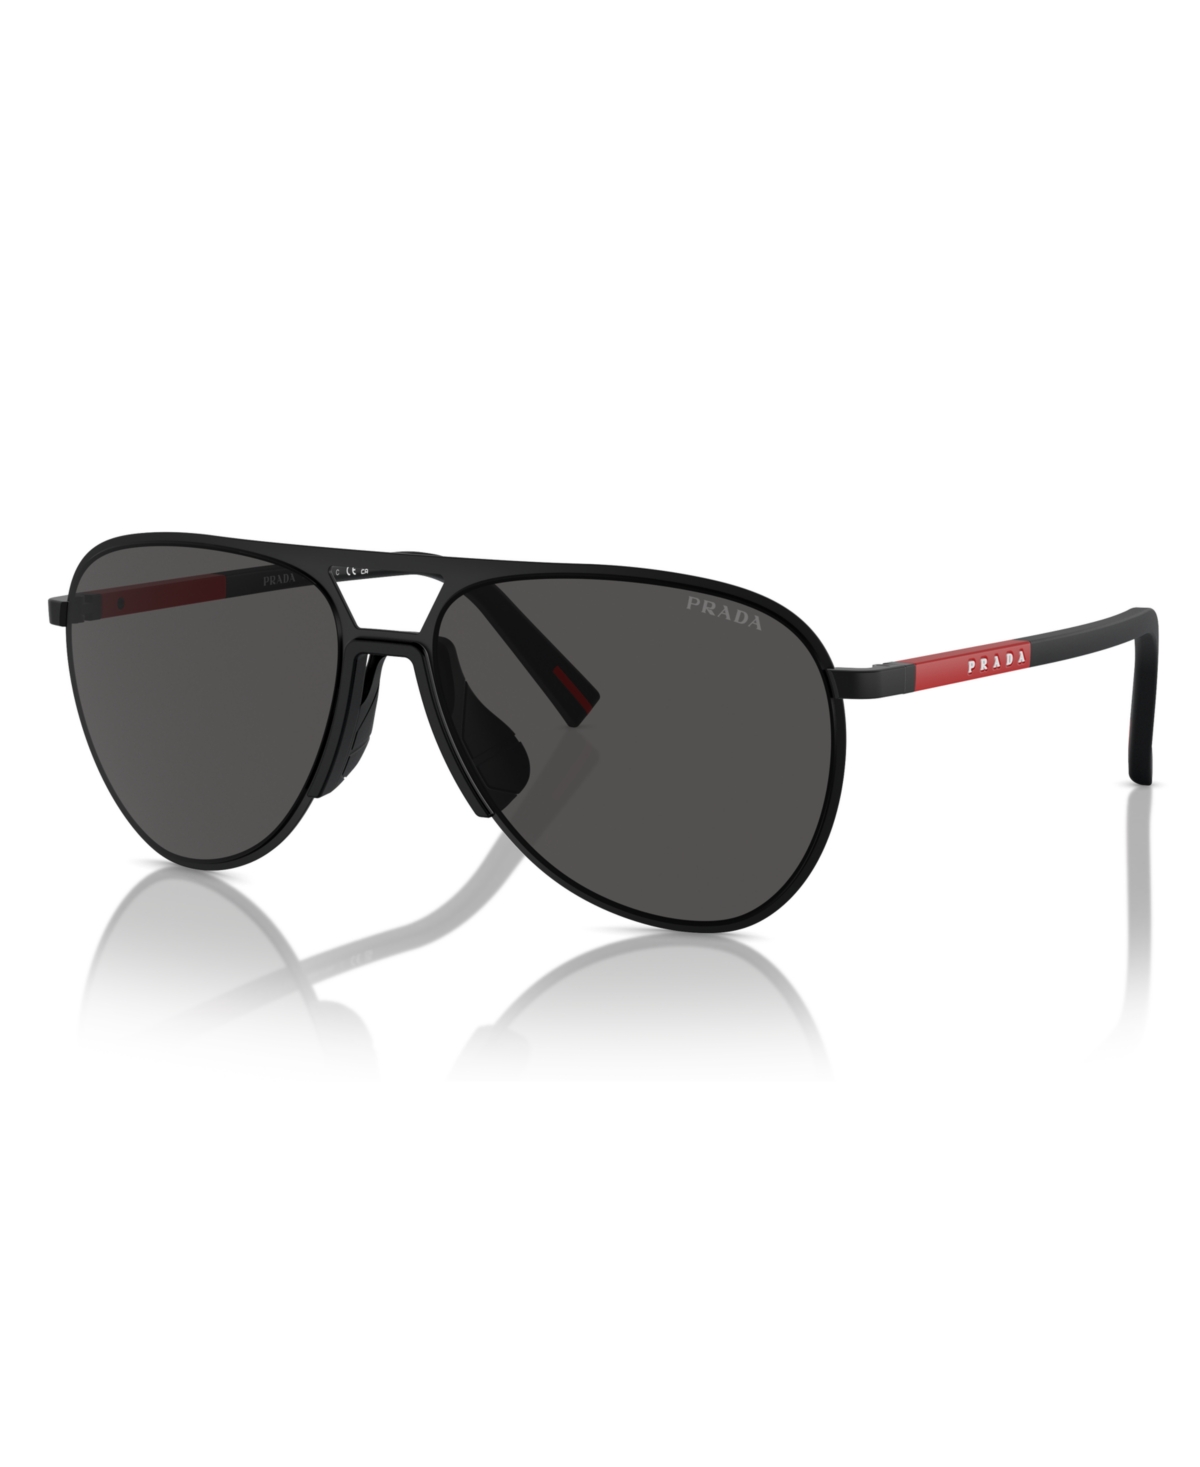 Men's Sunglasses, Ps 53ZS - Matte Black